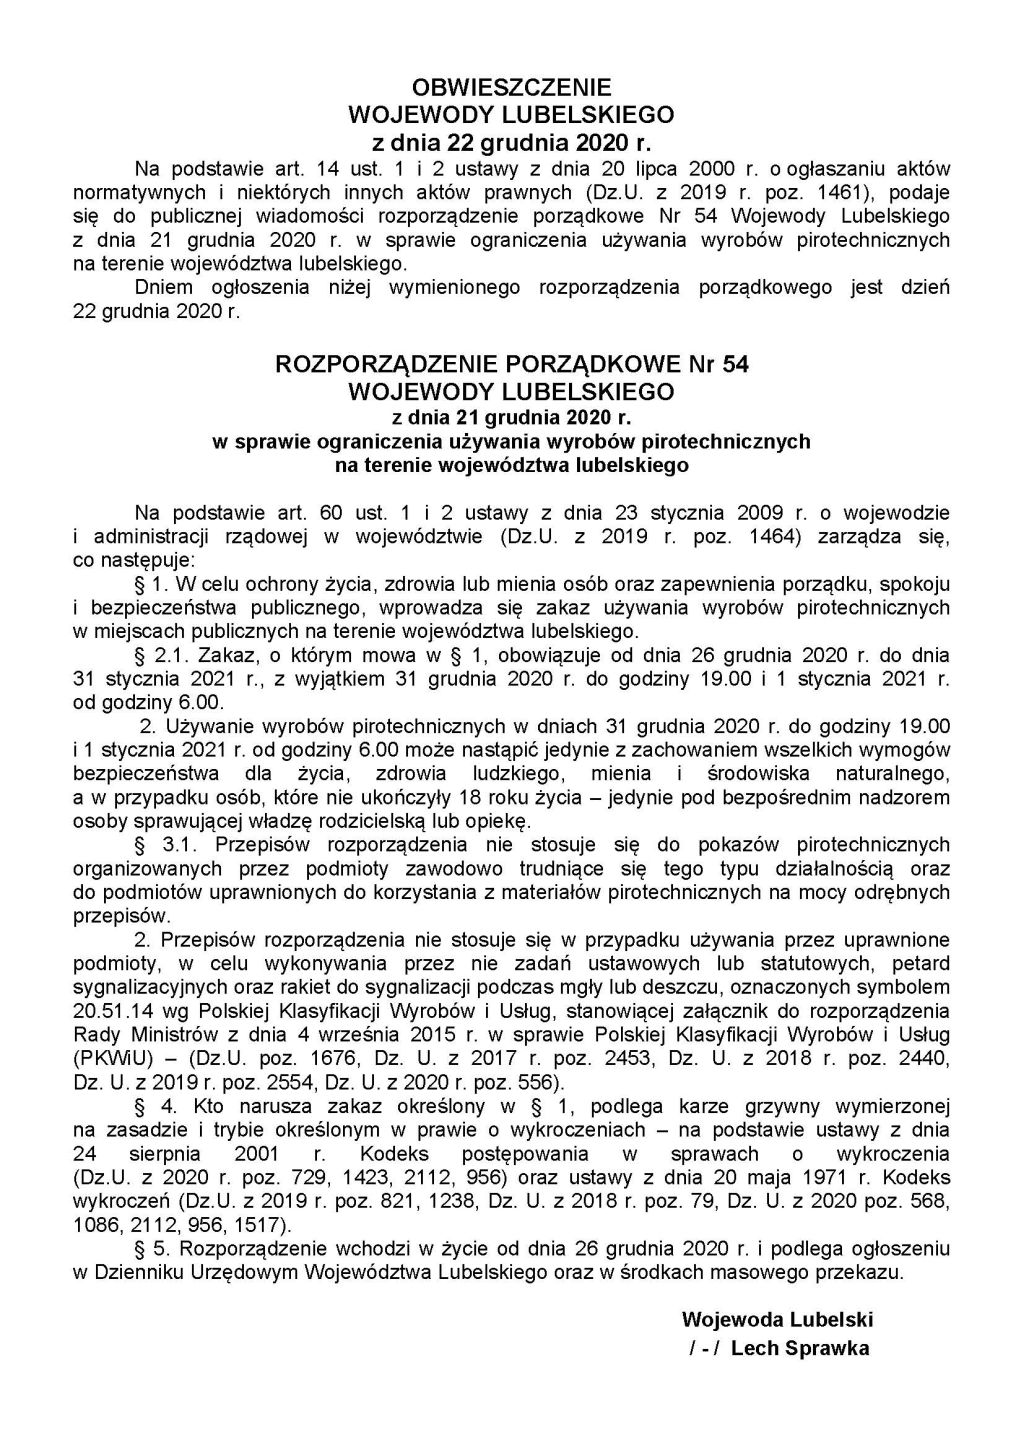 ROZPORZĄDZENIE PORZĄDKOWE Nr 54 WOJEWODY LUBELSKIEGO z dnia 21 grudnia 2020 r. w sprawie ograniczenia używania wyrobów pirotechnicznych na terenie województwa lubelskiego